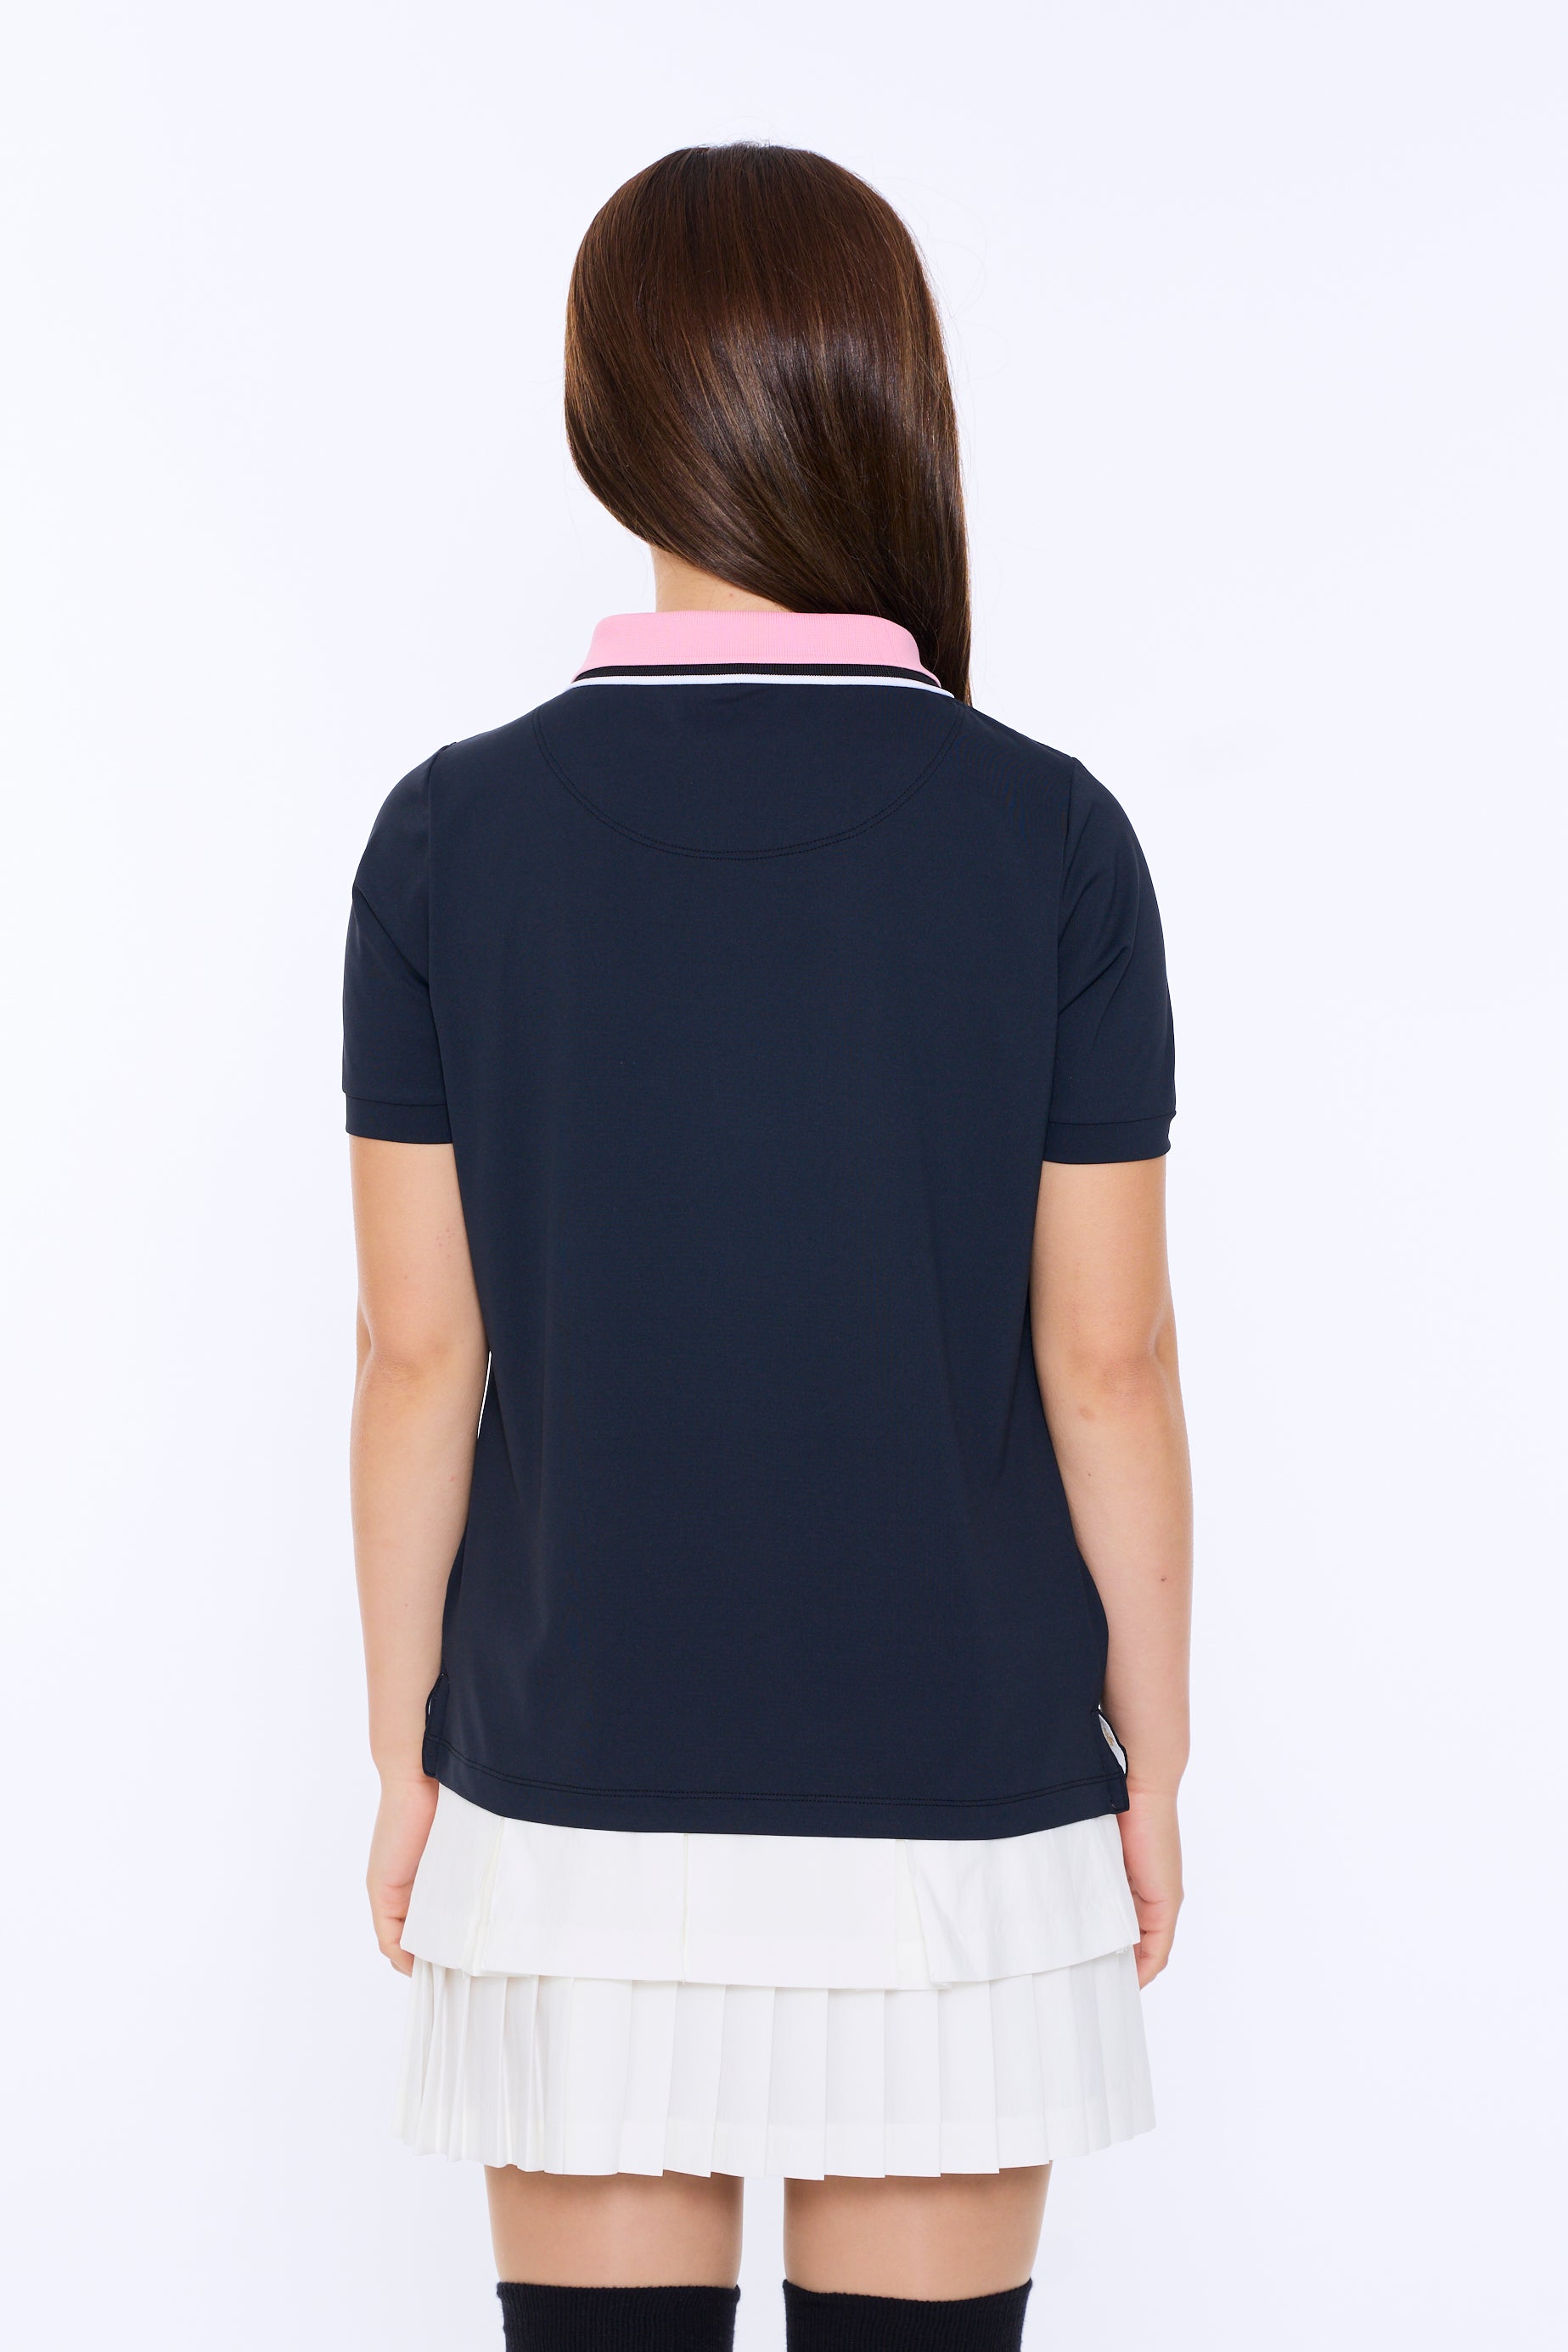 雙色短袖 Polo 衫 (701H2012)